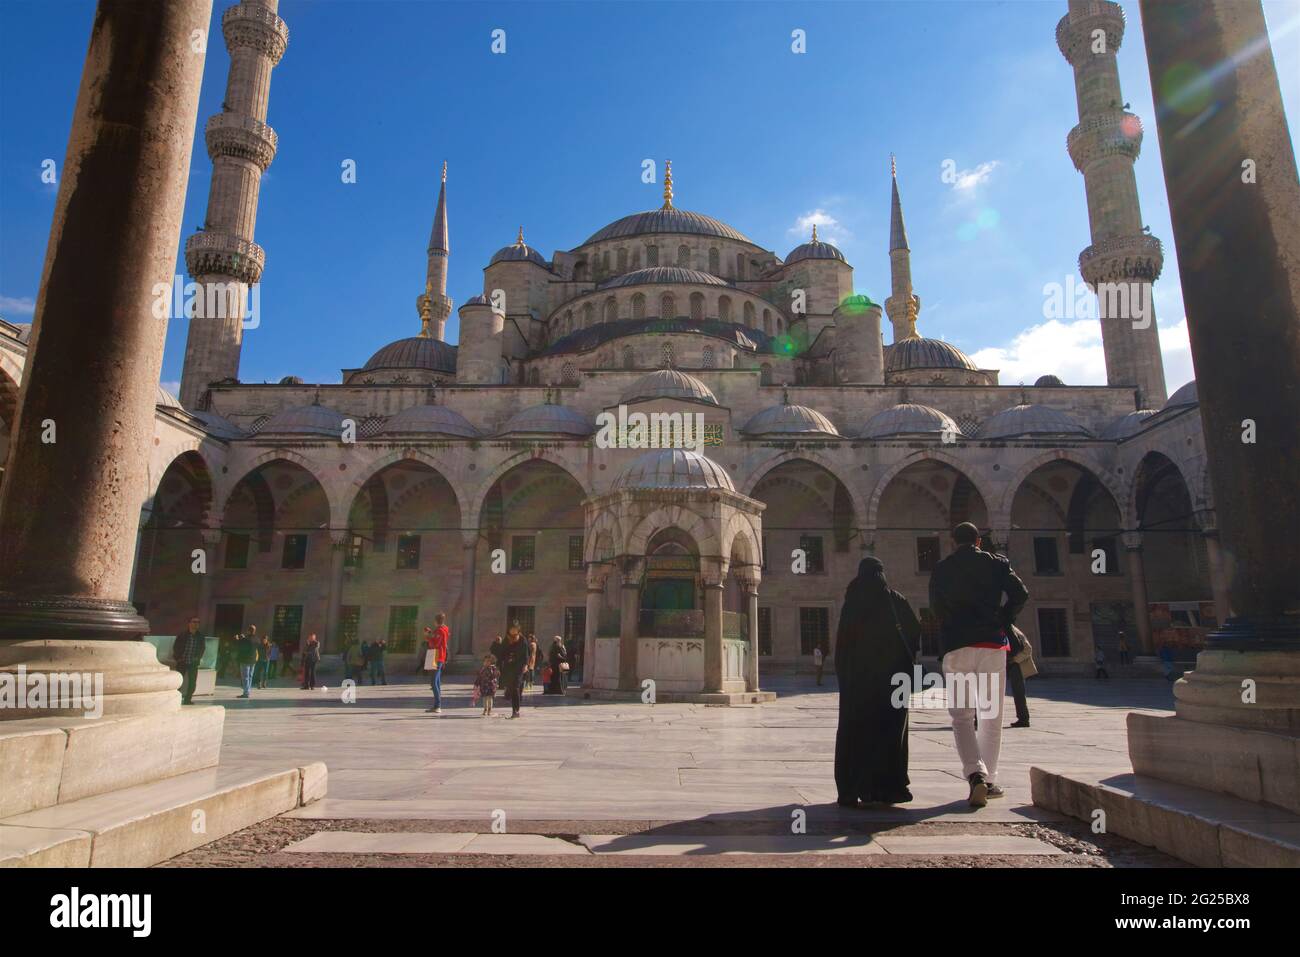 Entrée dans la mosquée du Sultan Ahmed (turc : Sultan Ahmet Camii), également connue sous le nom de Mosquée bleue. Une mosquée du vendredi de l'époque ottomane située à Istanbul, en Turquie Banque D'Images